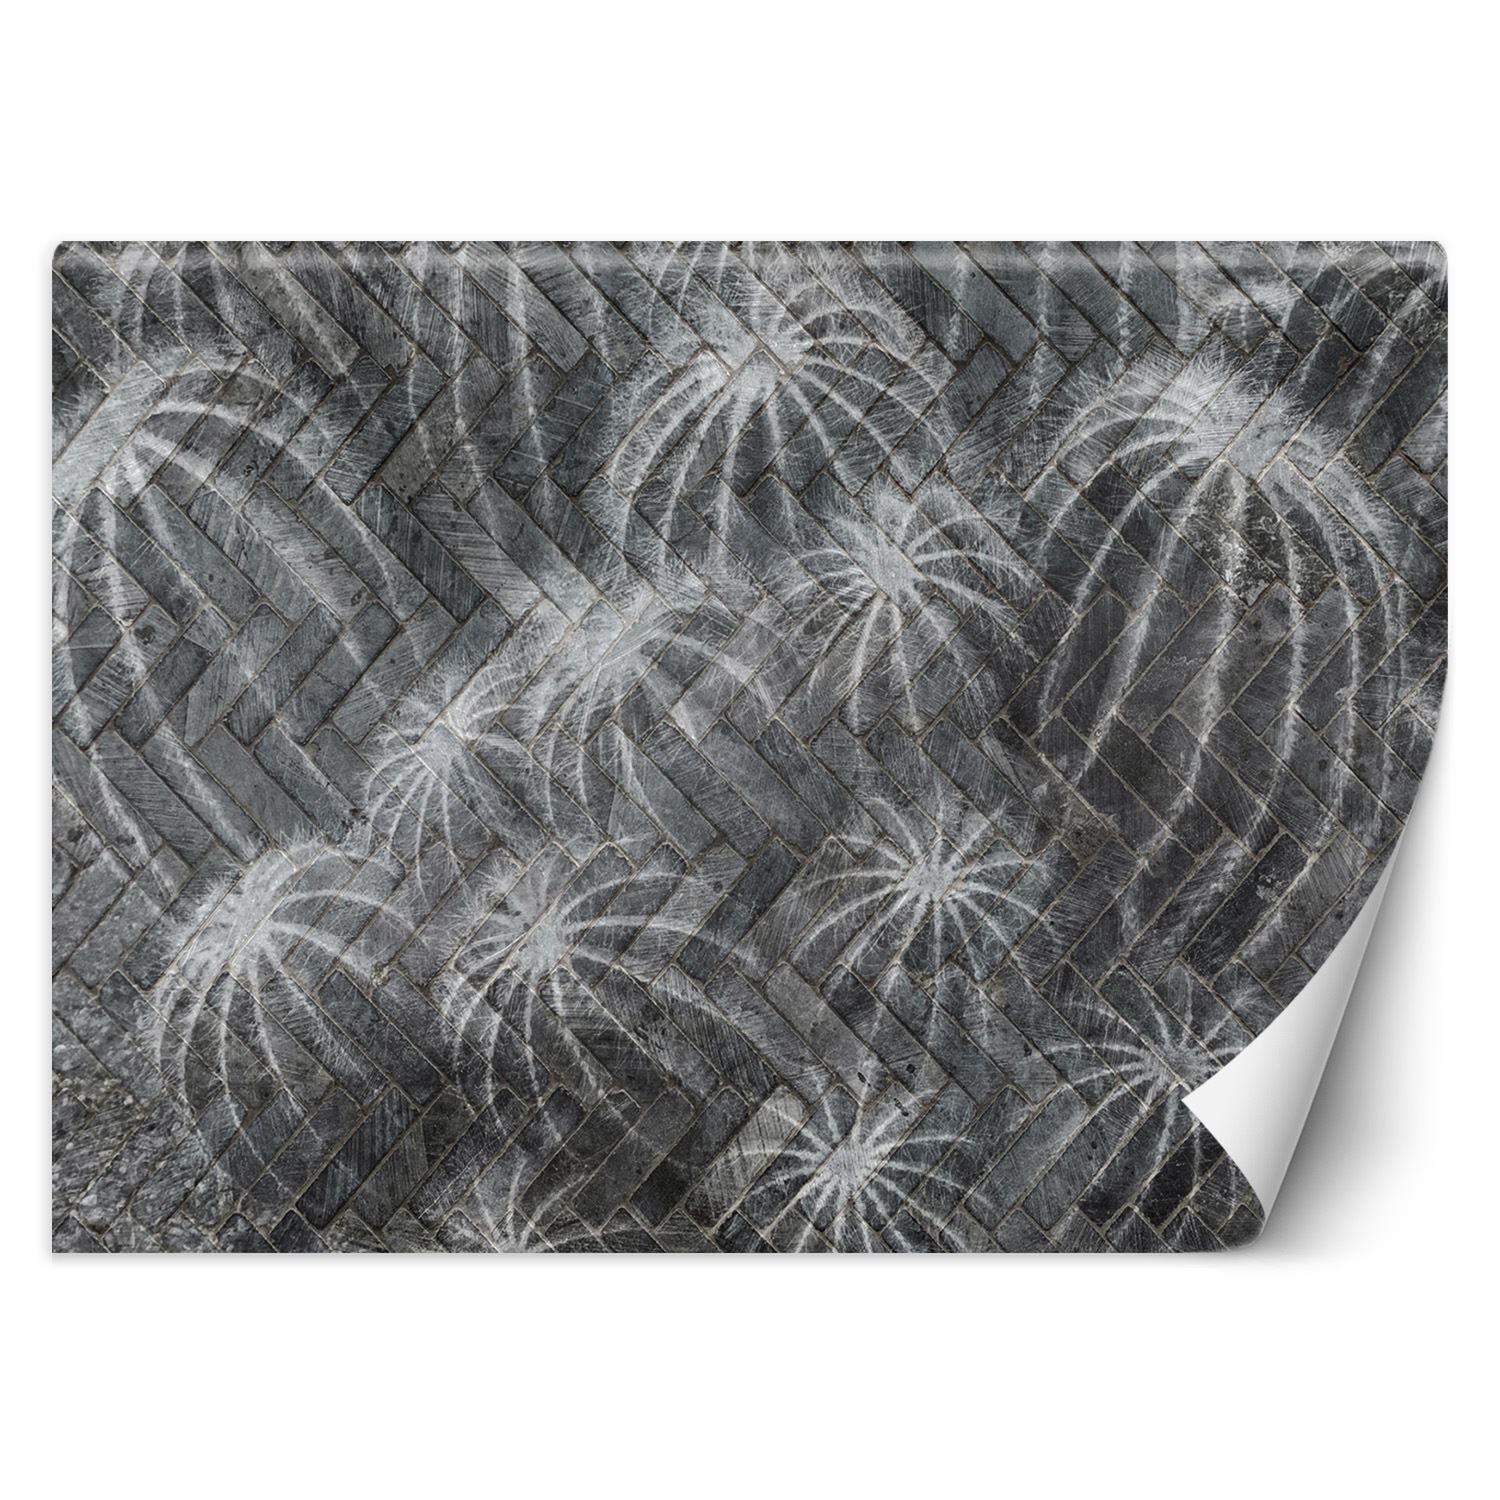 Trend24 – Behang – Cactussen In Grijs – Vliesbehang – Behang Woonkamer – Fotobehang – 450x315x2 cm – Incl. behanglijm